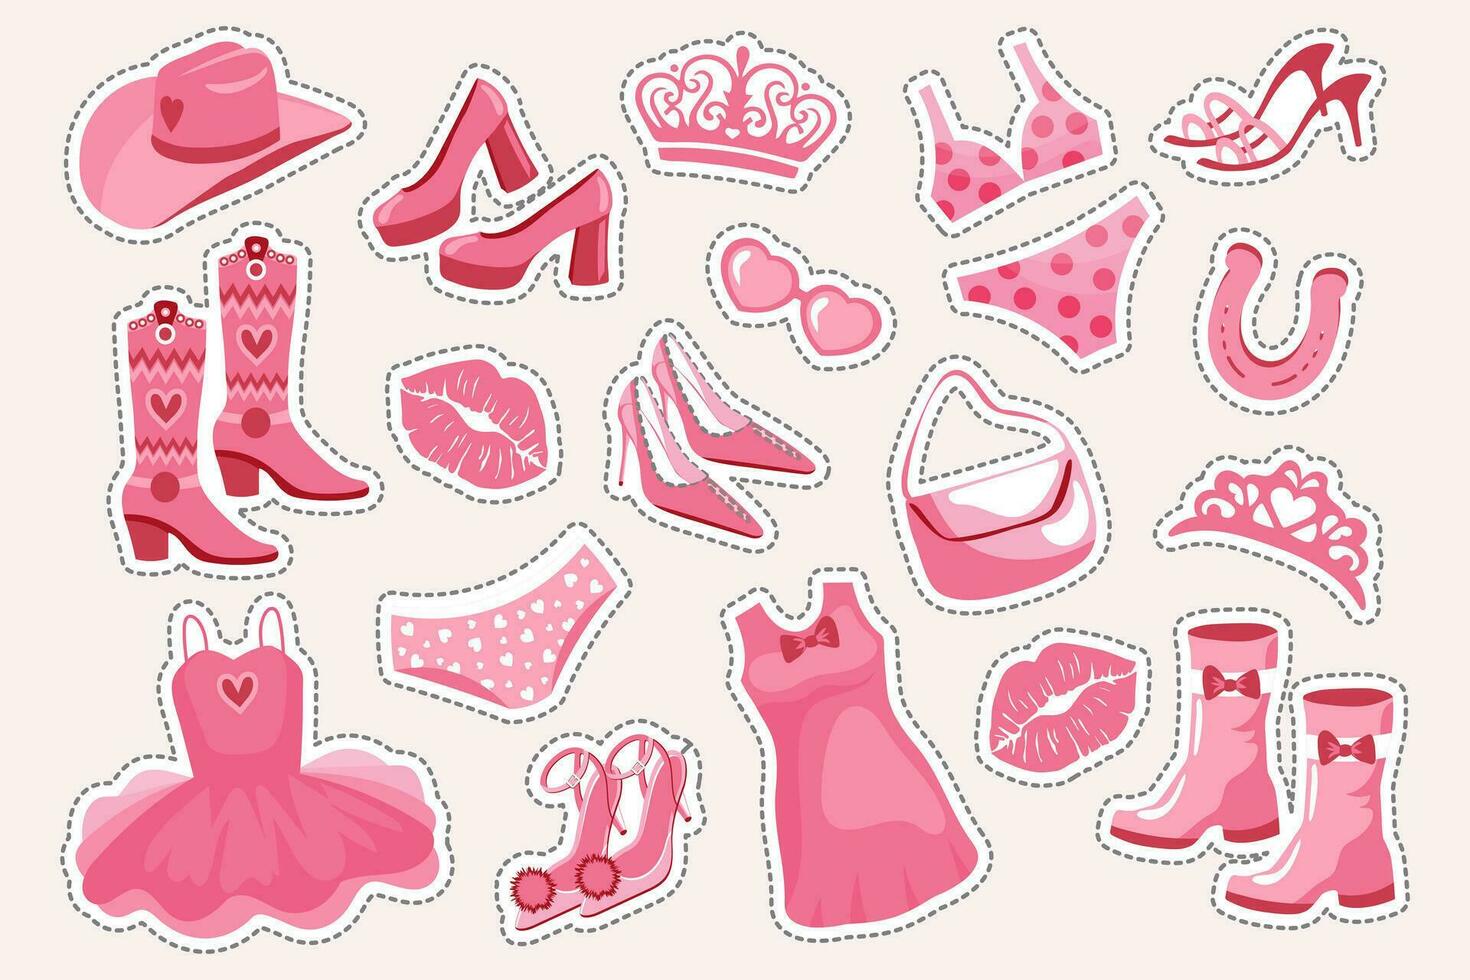 princesa pegatina colocar. rosado Moda colocar, accesorios y ropa para un rosado muñeca. corona, vestido, zapatos, vaquero sombrero, botas, bolsa, lentes. vector